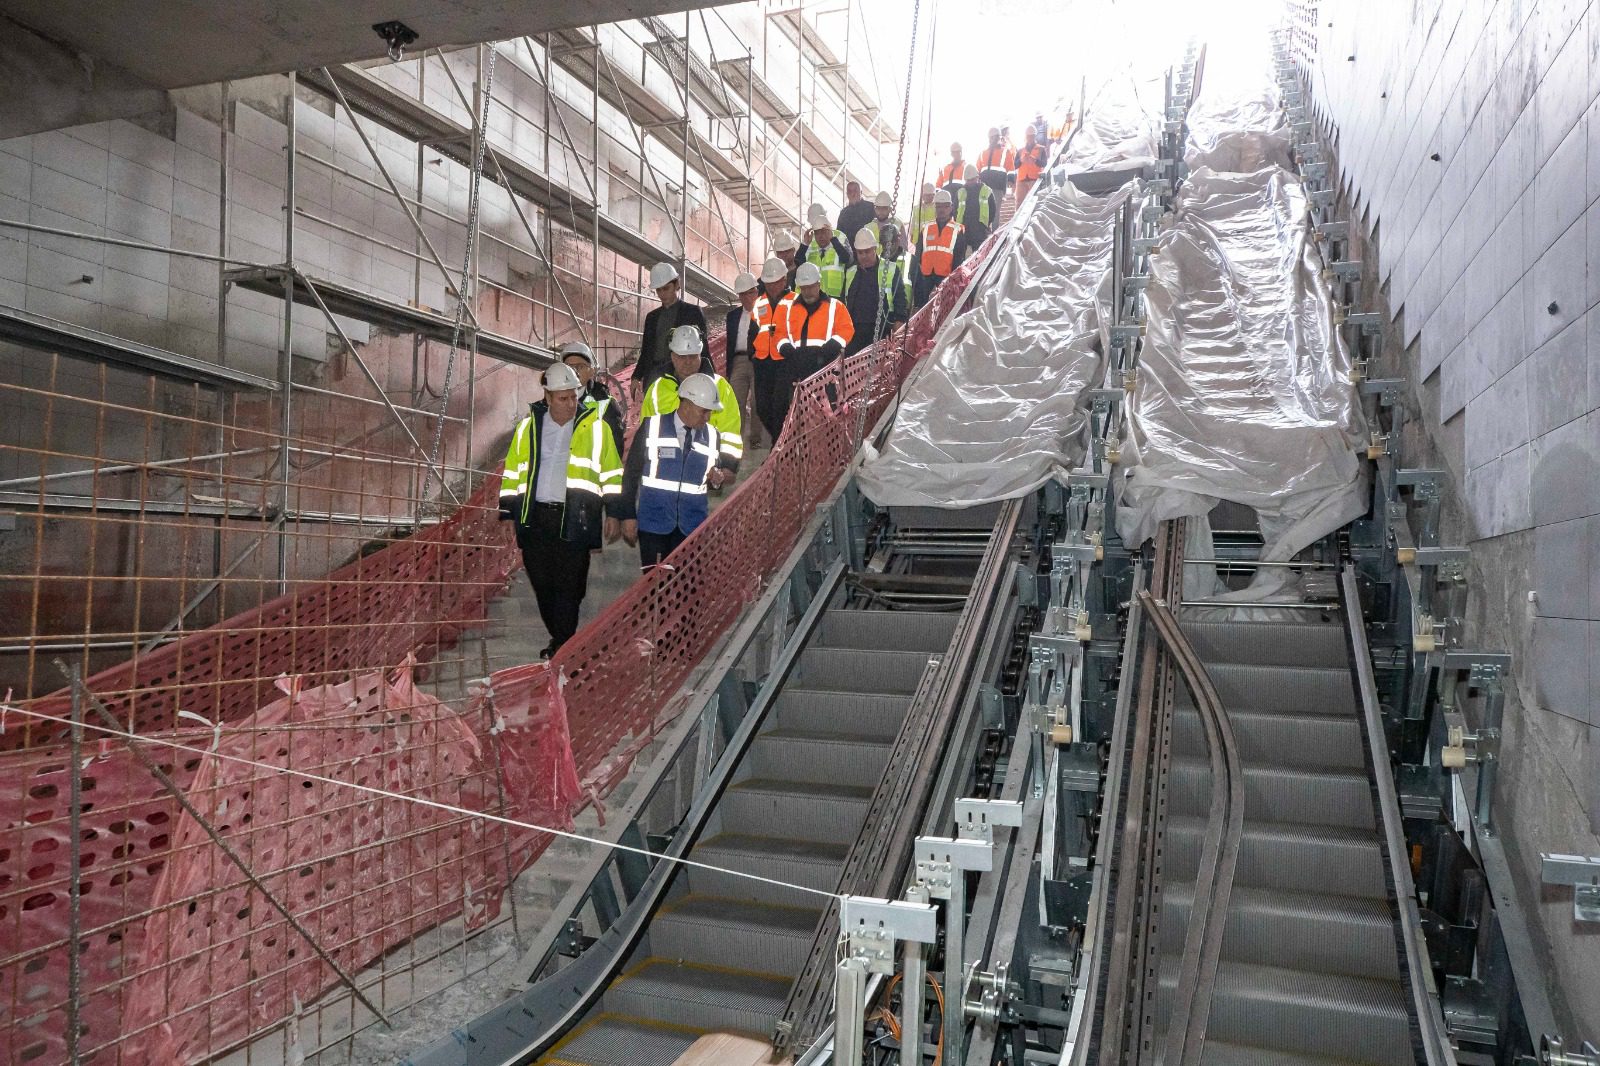 Başkan Soyer Narlıdere Metrosu için müjdeyi verdi